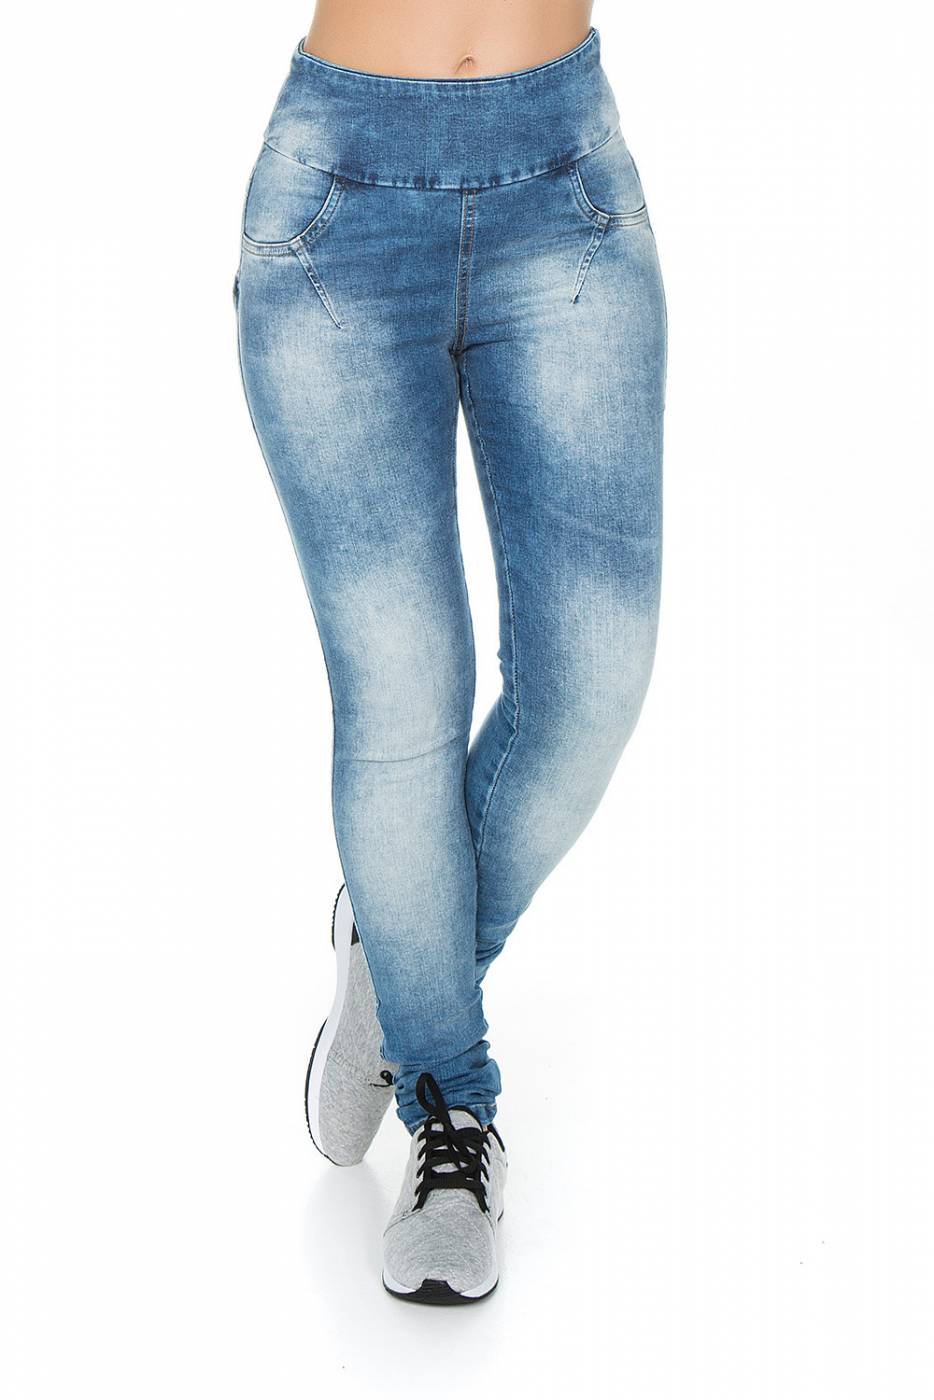 Legging Jeans Pence - Janfer Sport